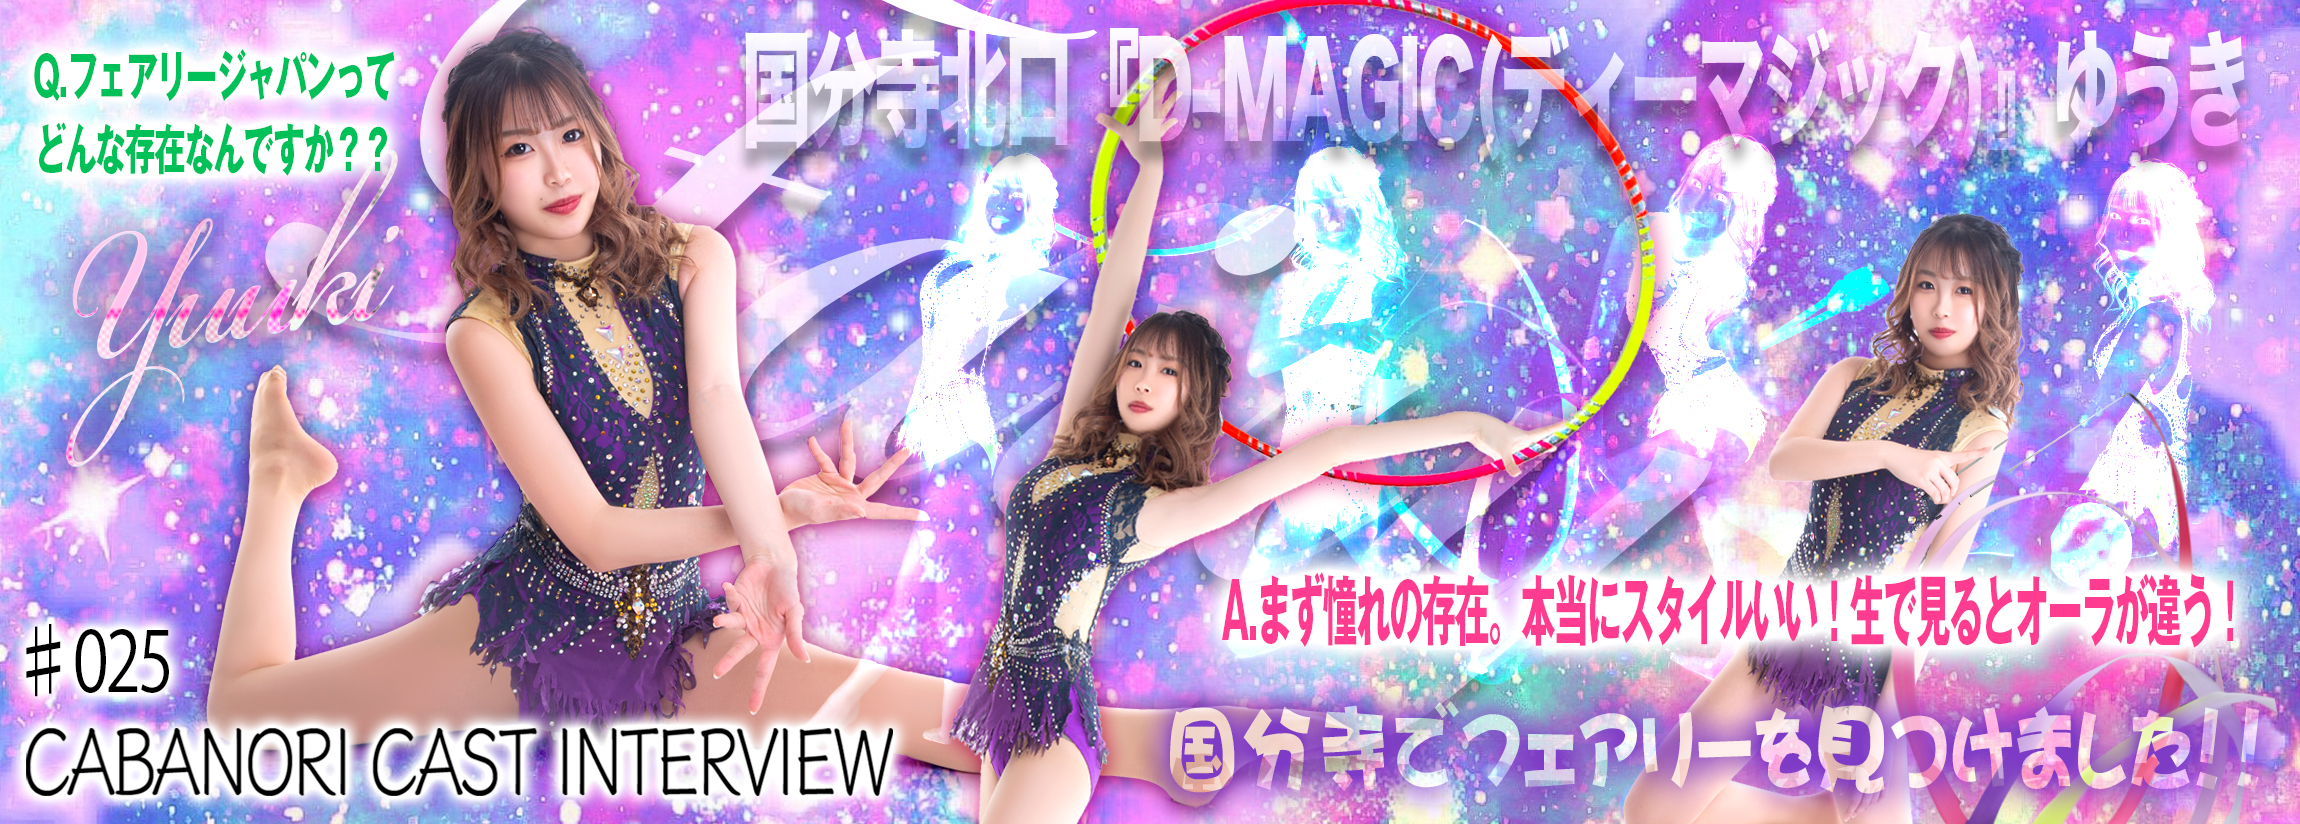 【CAST INTERVIEW】国分寺『D-MAGIC(ディーマジック)』ゆうき